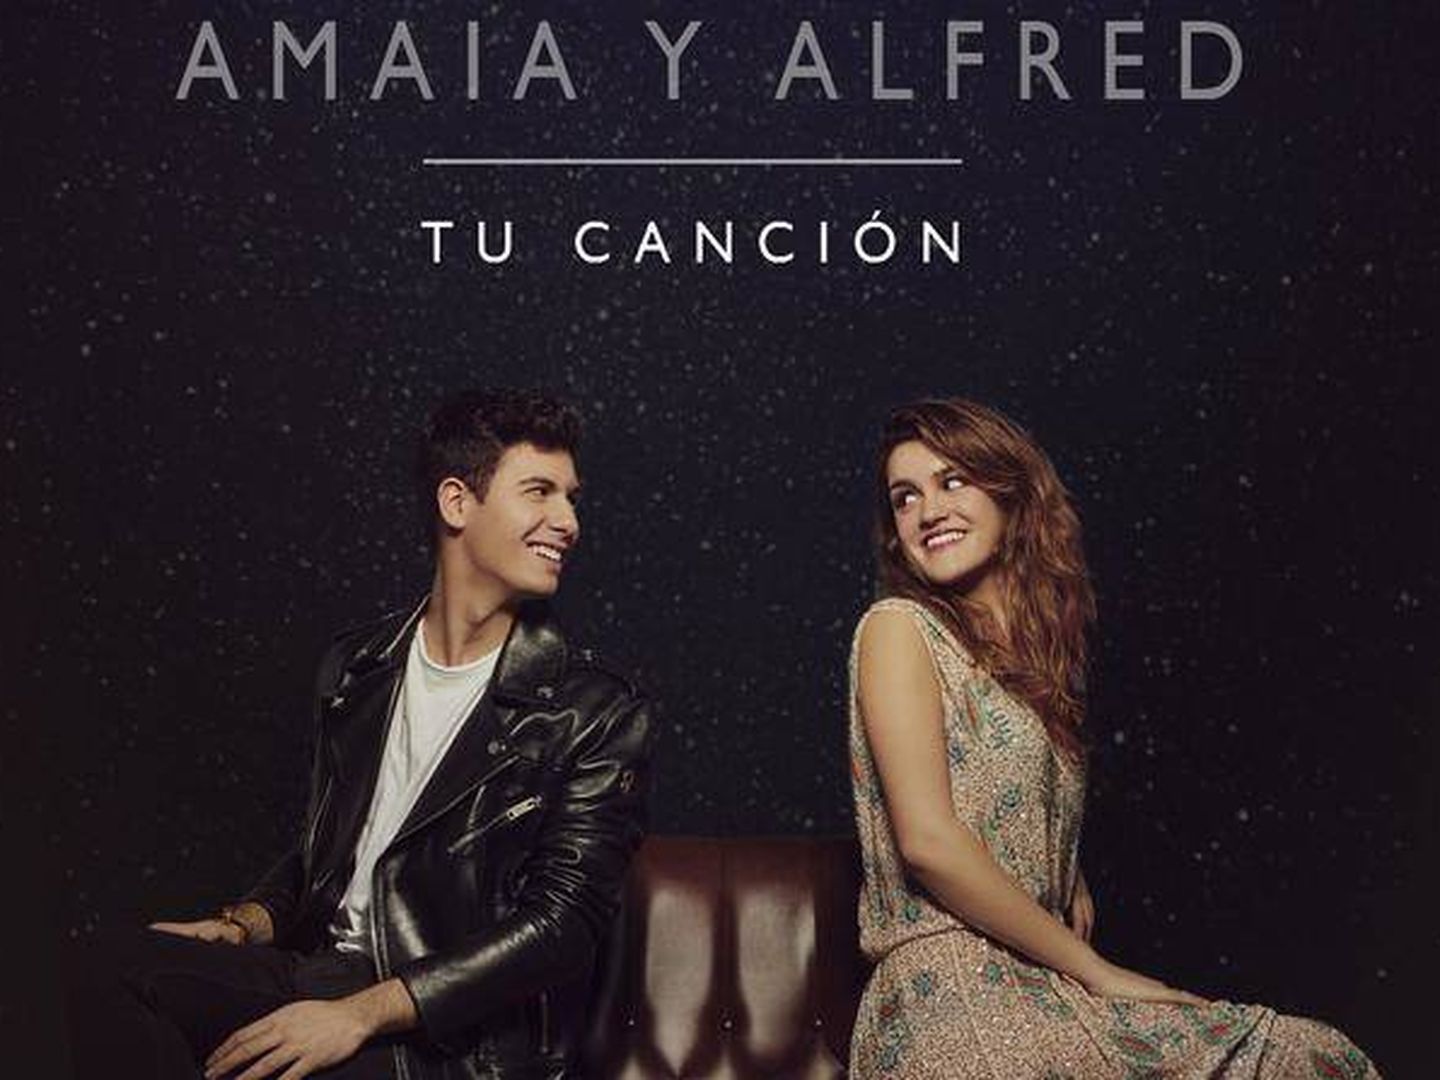 Portada oficial de 'Tu Canción', la canción con la que Amaia y Alfred representarán a España en Eurovisión 2018.